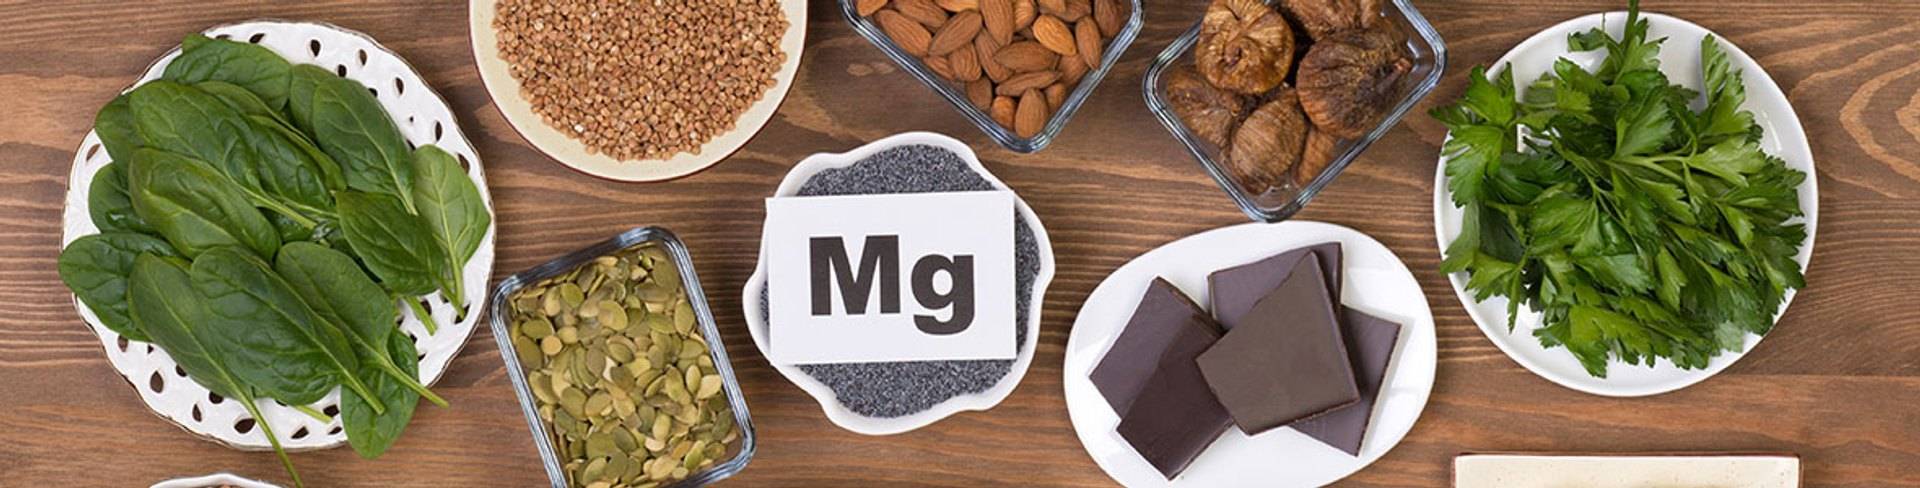 Perché il magnesio è così importante per la tua salute e il tuo benessere